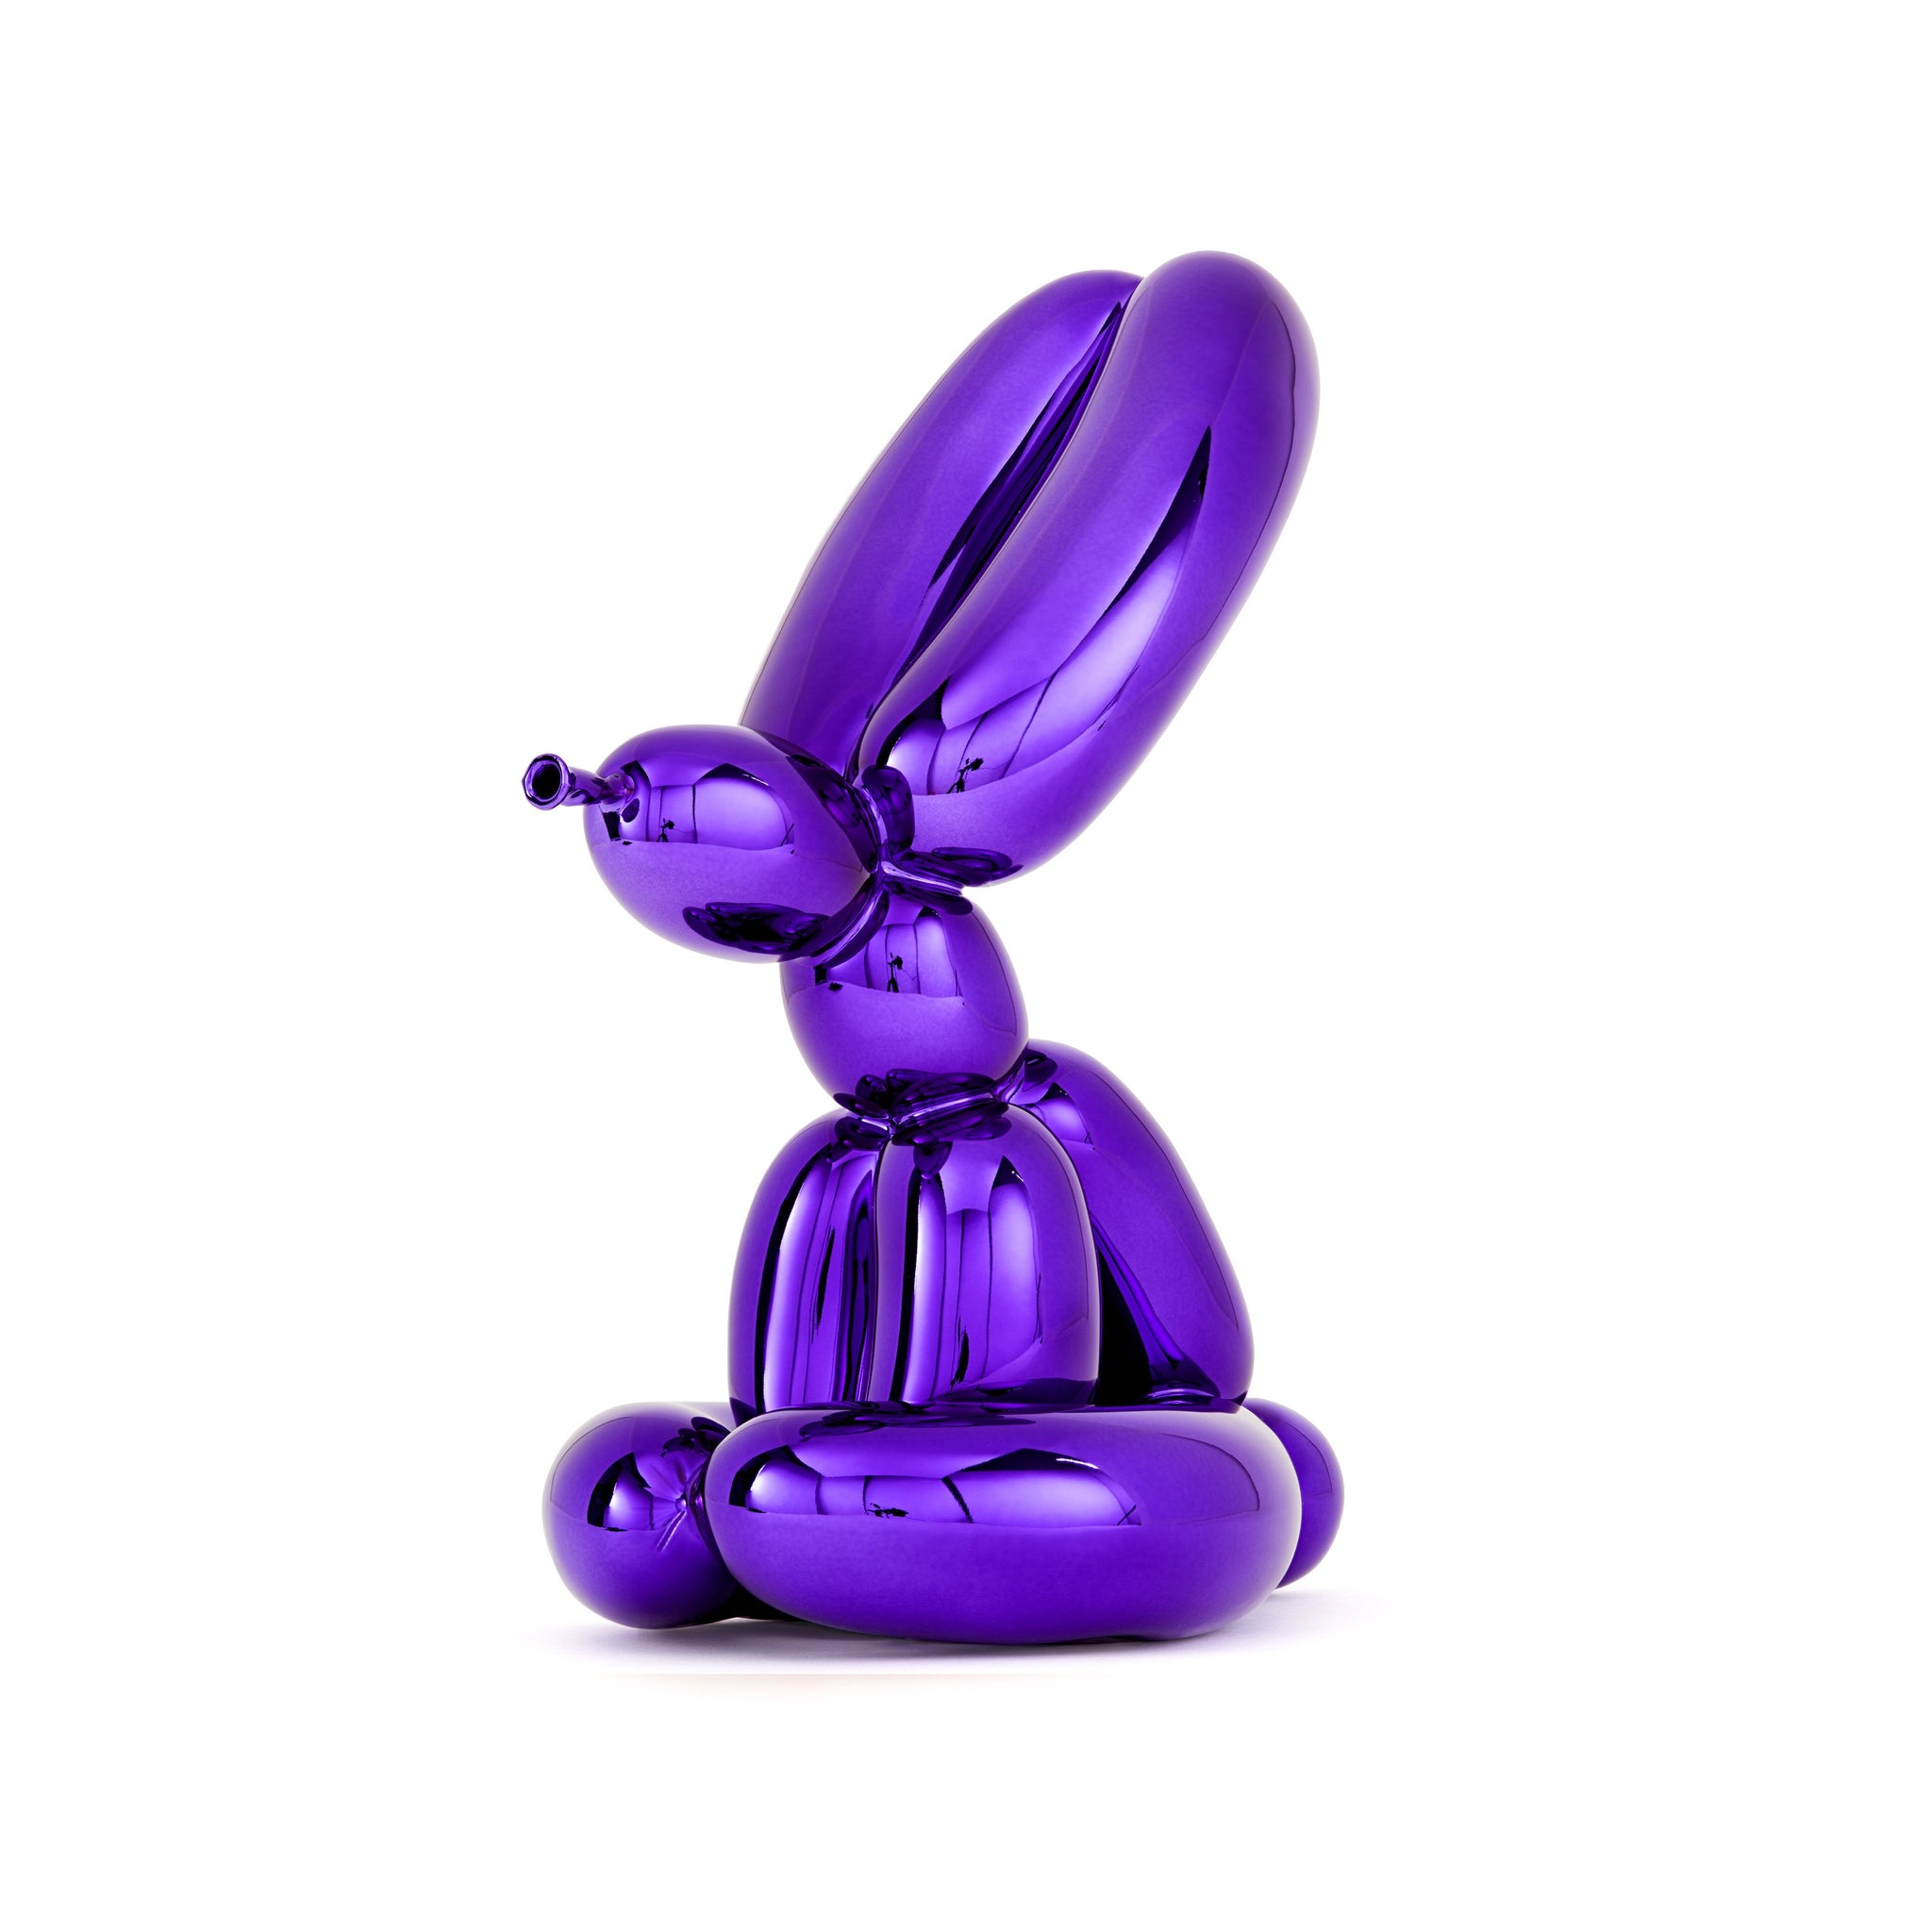 Jeff Koons: Balloon Rabbit (Violet) edition